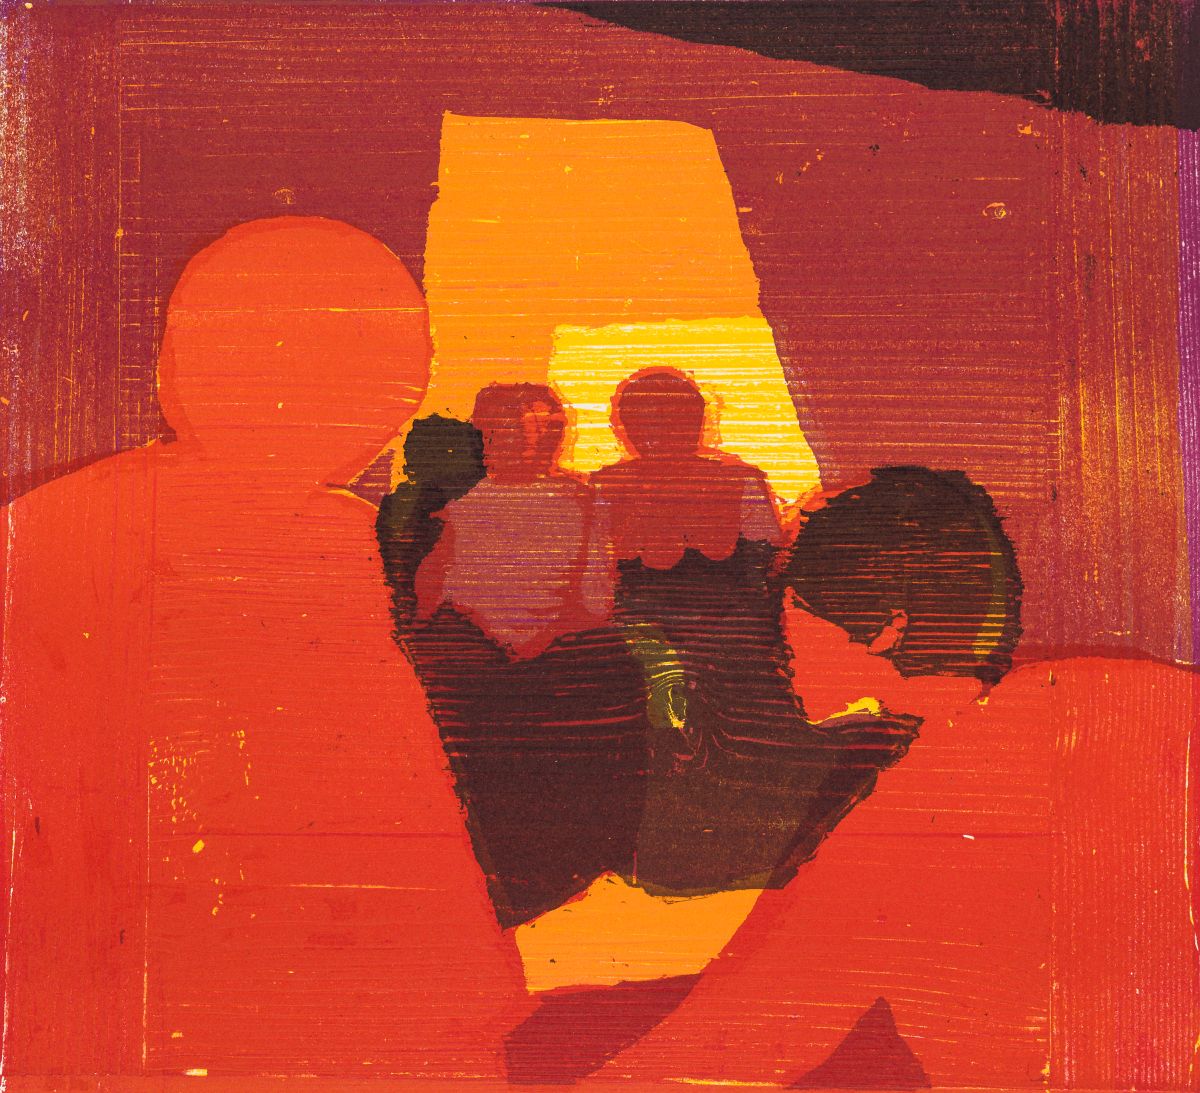 Hammerstiel, Robert(1933-2020)Three Coloured Woodcuts: Nächtliche Bittgänger (19)91, Die rote